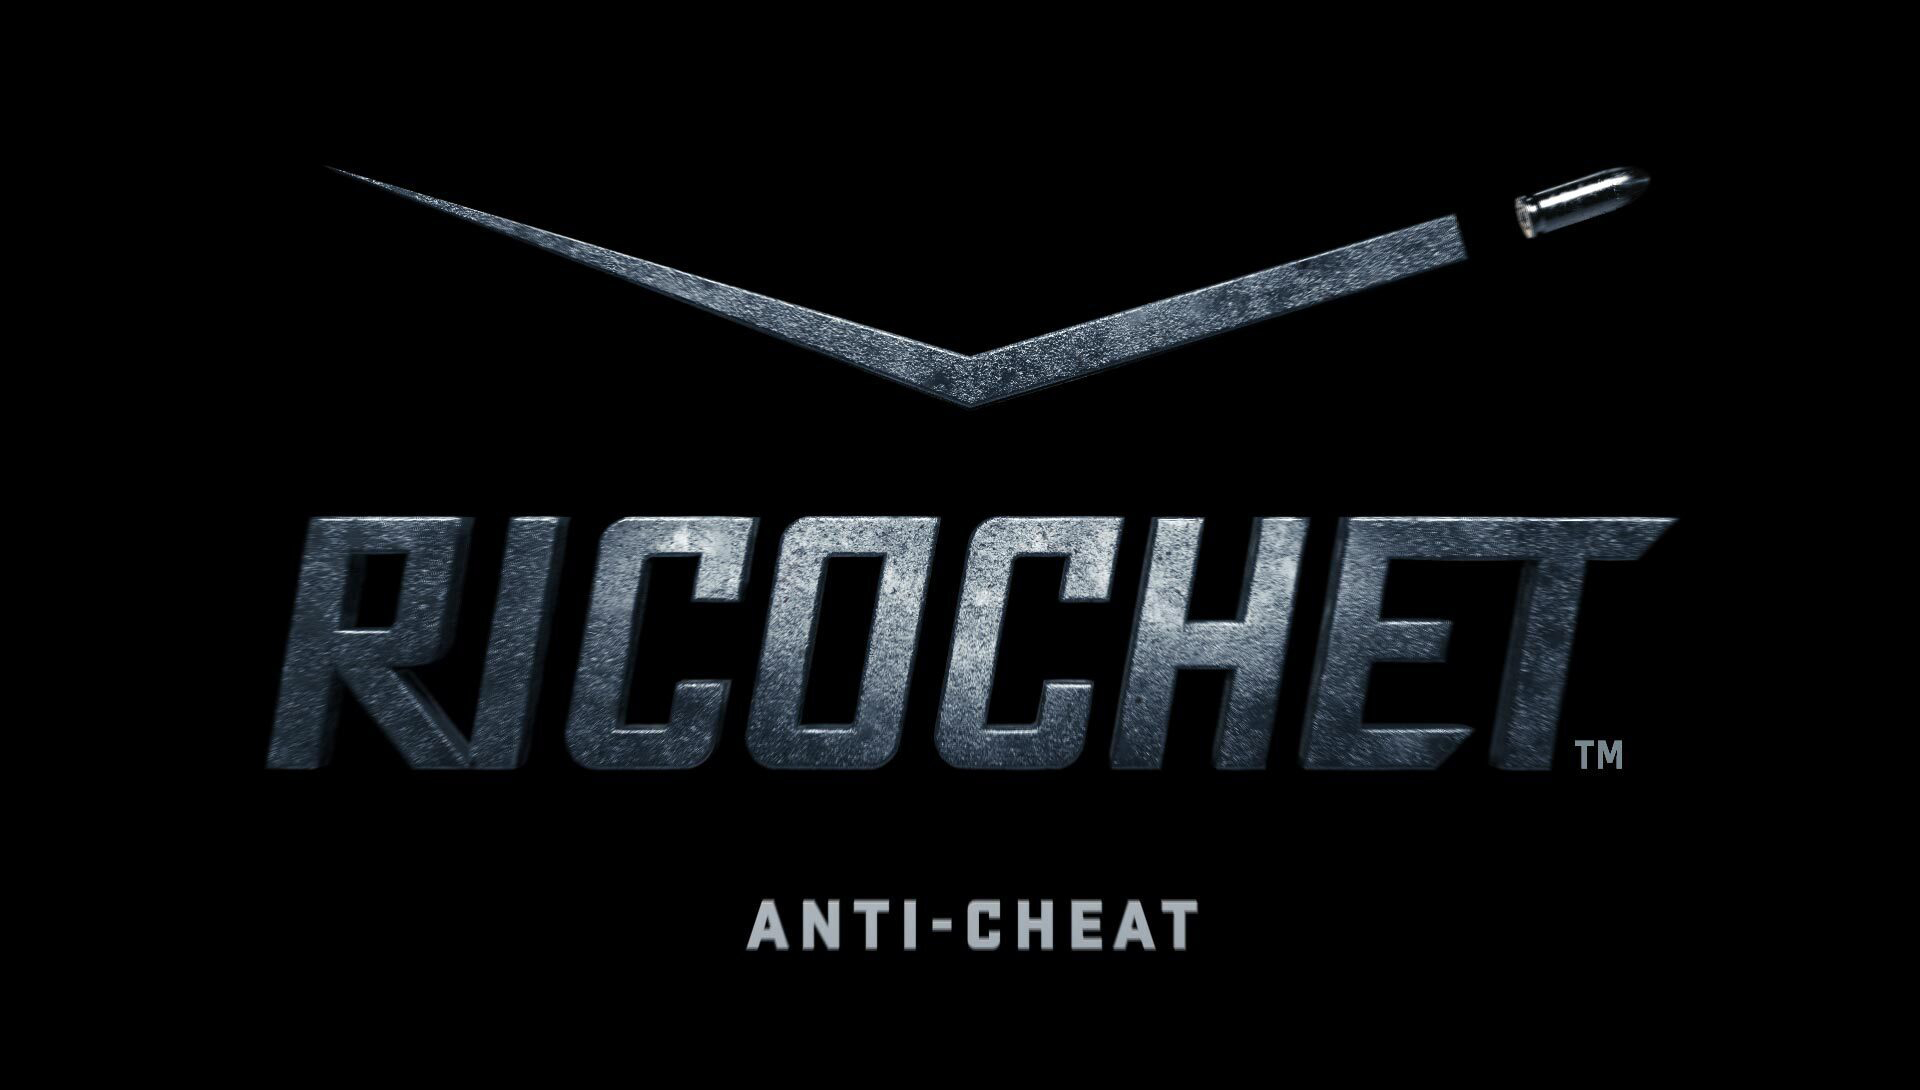 Sterownik poziomu RICOCHET Anti-Cheat Kernel firmy Warzone został ujawniony, aby oszukać programistów